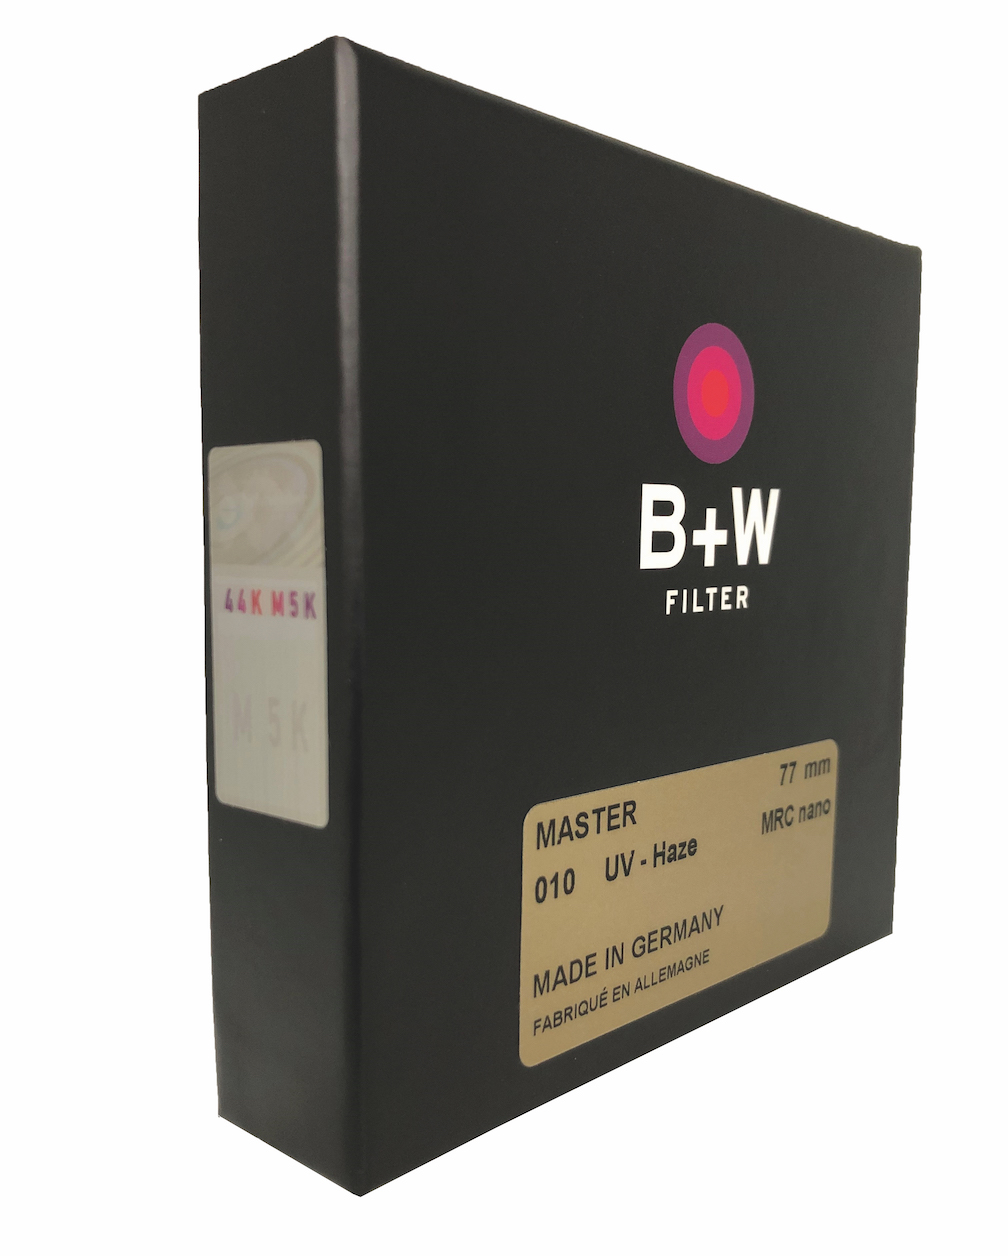 B+W Filter mit optimiertem Sicherheitsetikett. (c) Schneider-Kreuznach